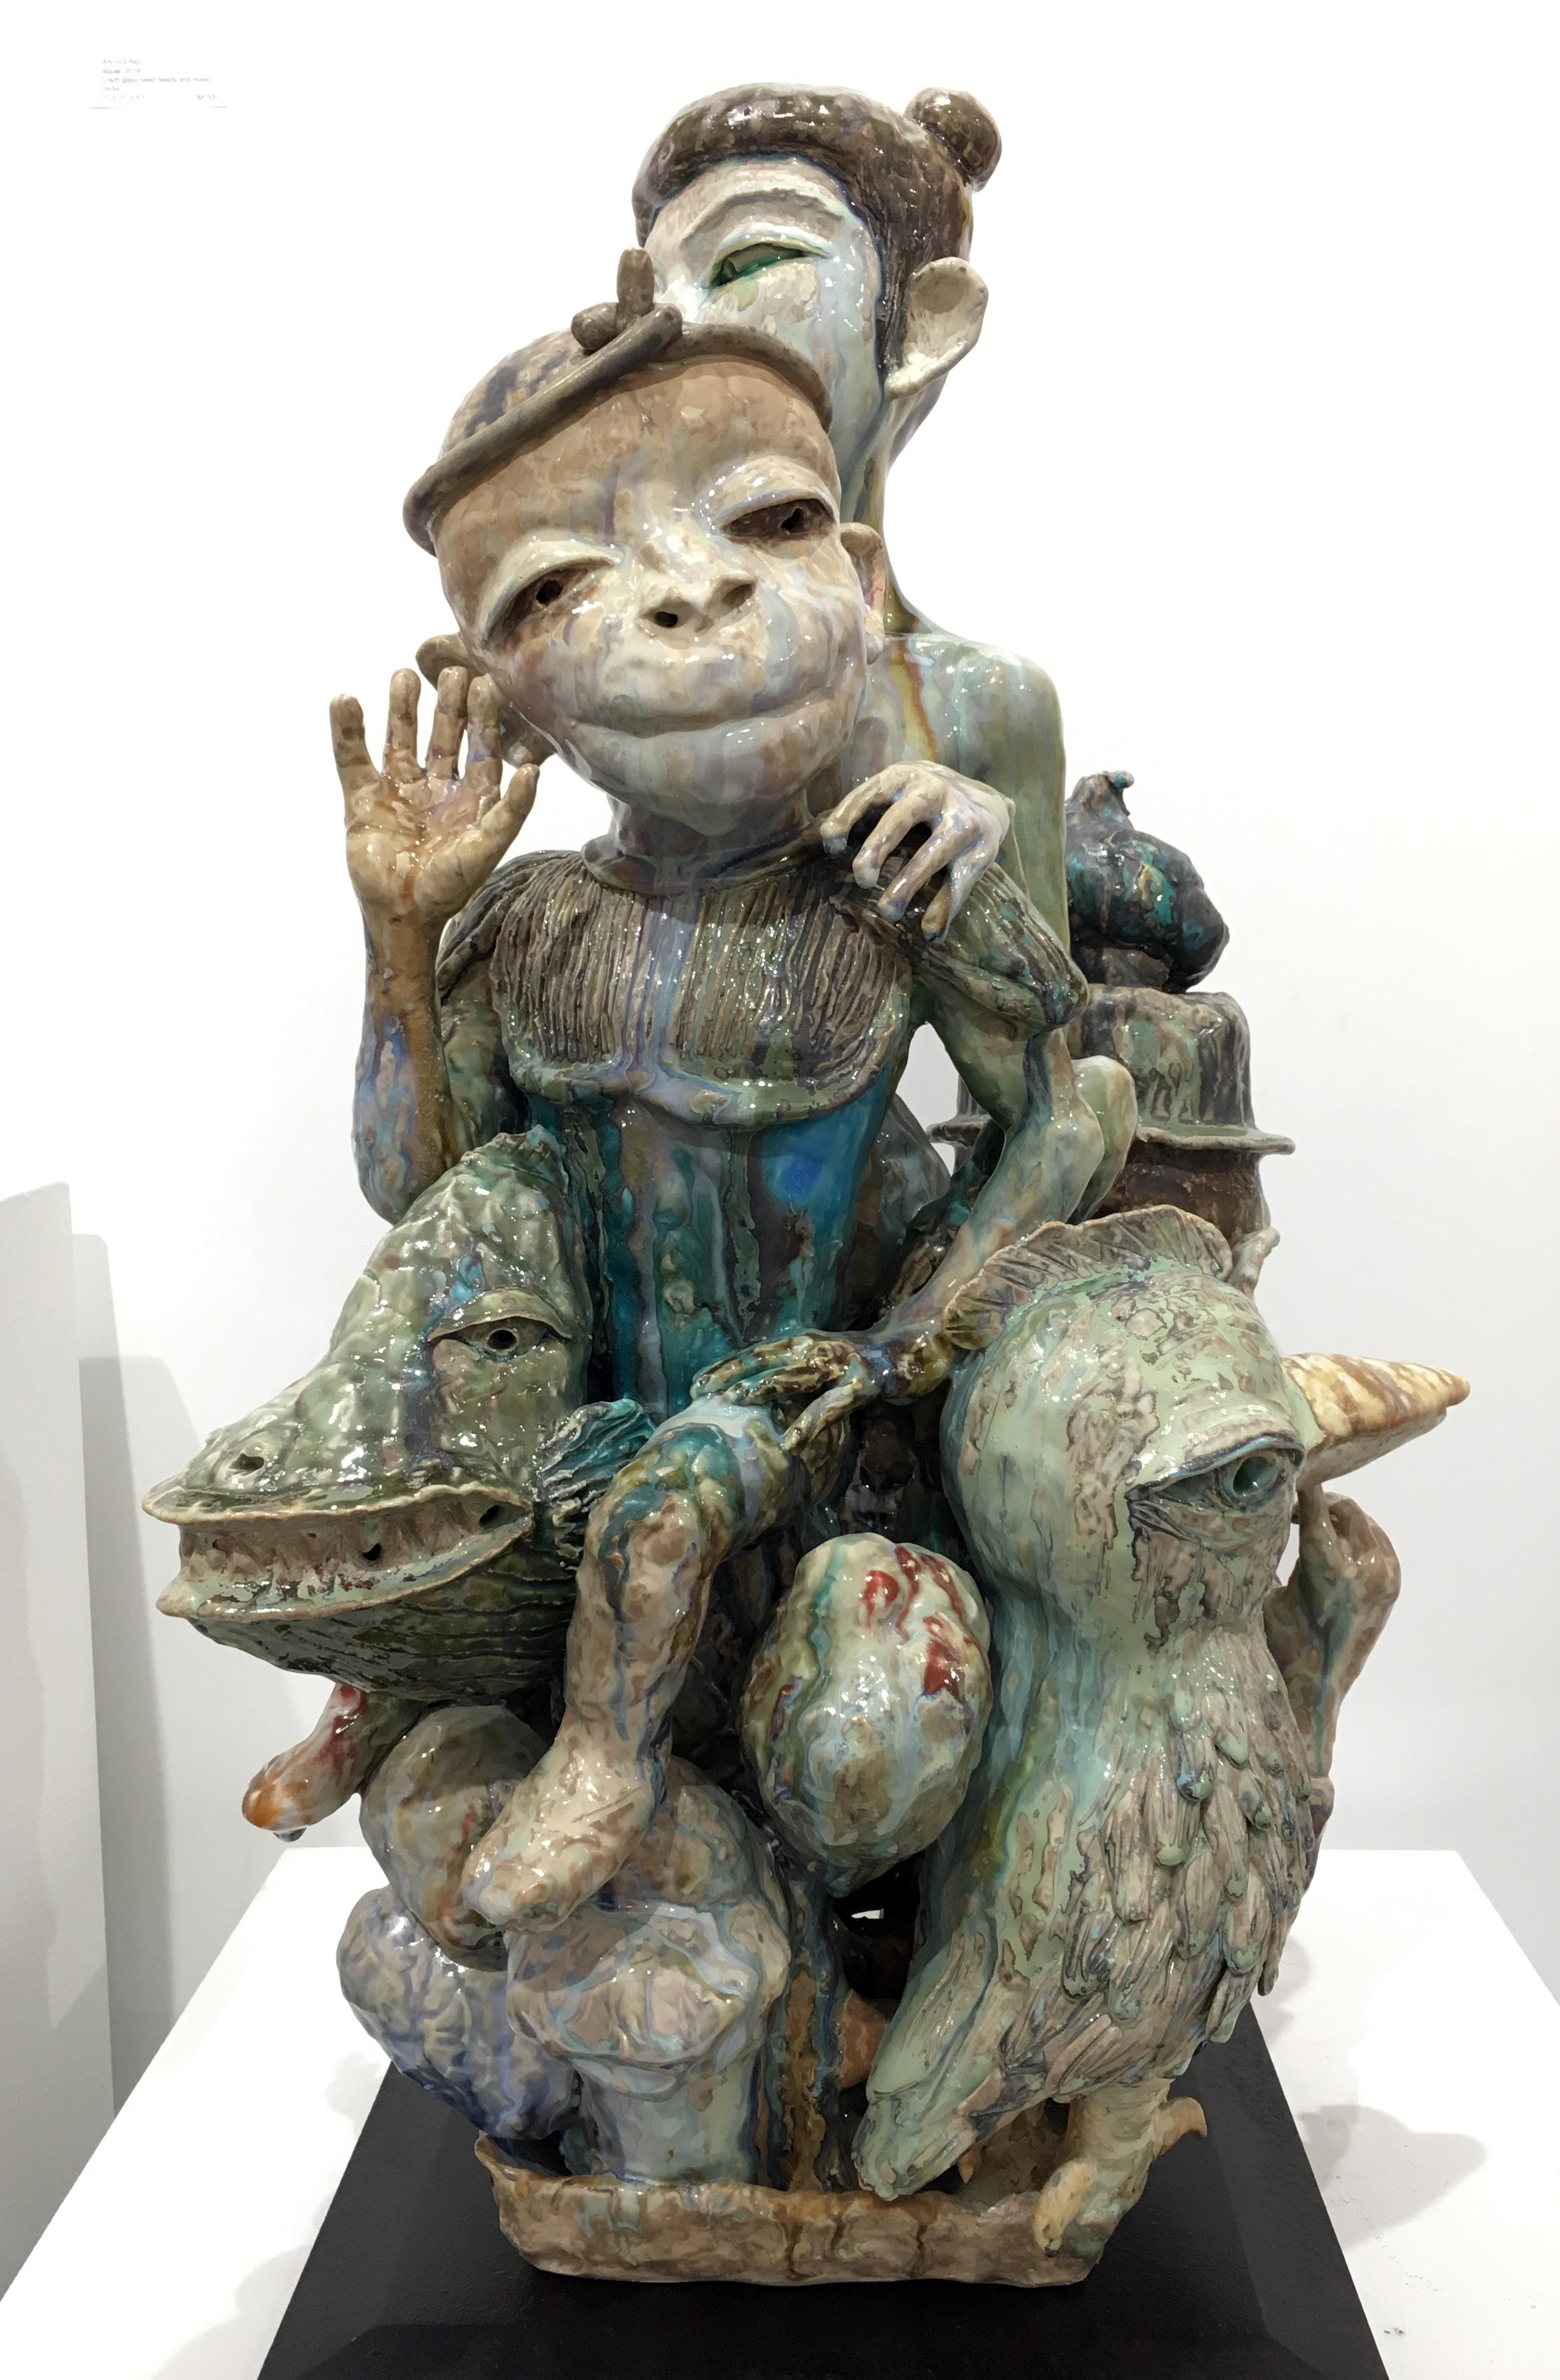 Les sculptures en céramique de SunKoo Yuh sont composées de groupes serrés de formes diverses, notamment de plantes, d'animaux, de poissons et de figures humaines. Si l'art coréen, le bouddhisme et les croyances confucéennes influencent certains